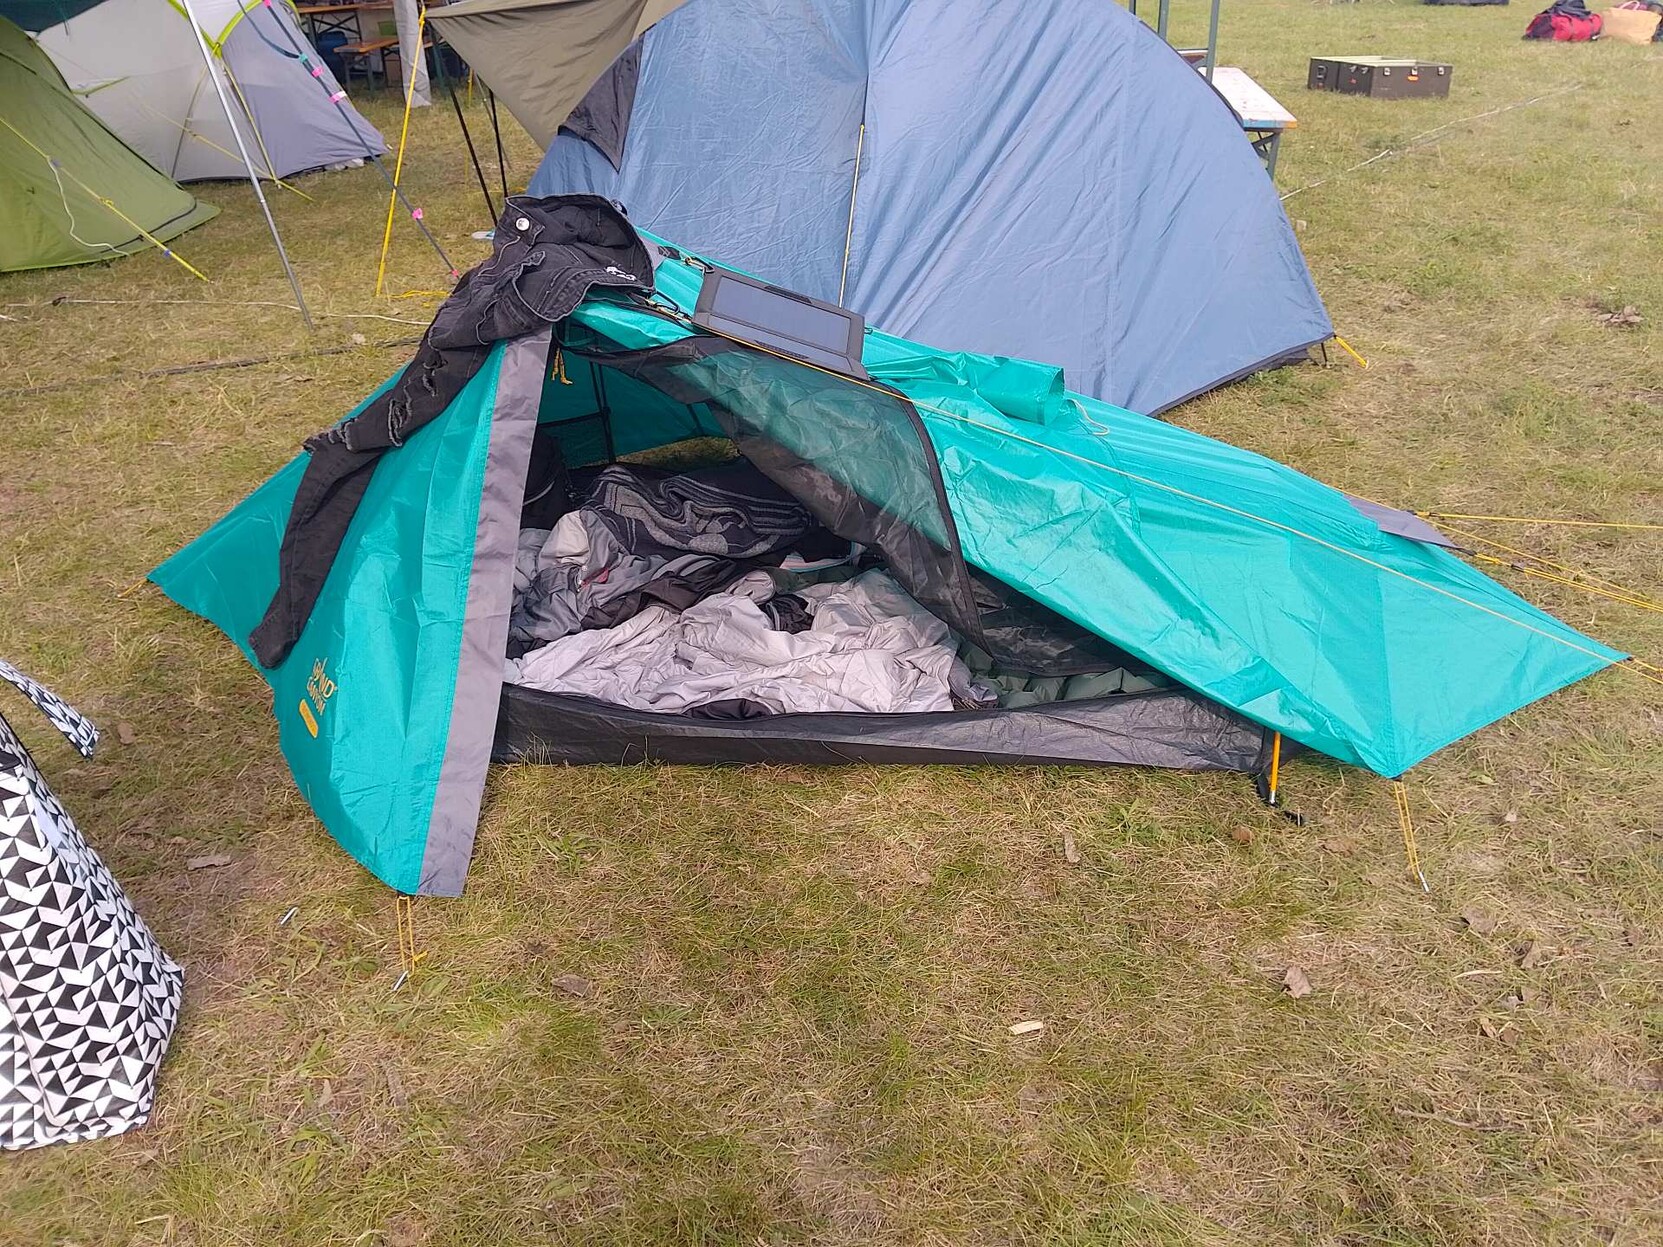 kleines türkises Zelt auf dem eine Hose zum lüften liegt und eine Solazeller liegt. Vorne ist das Zelt ofen und es ist ein Schlafsack zu sehen.